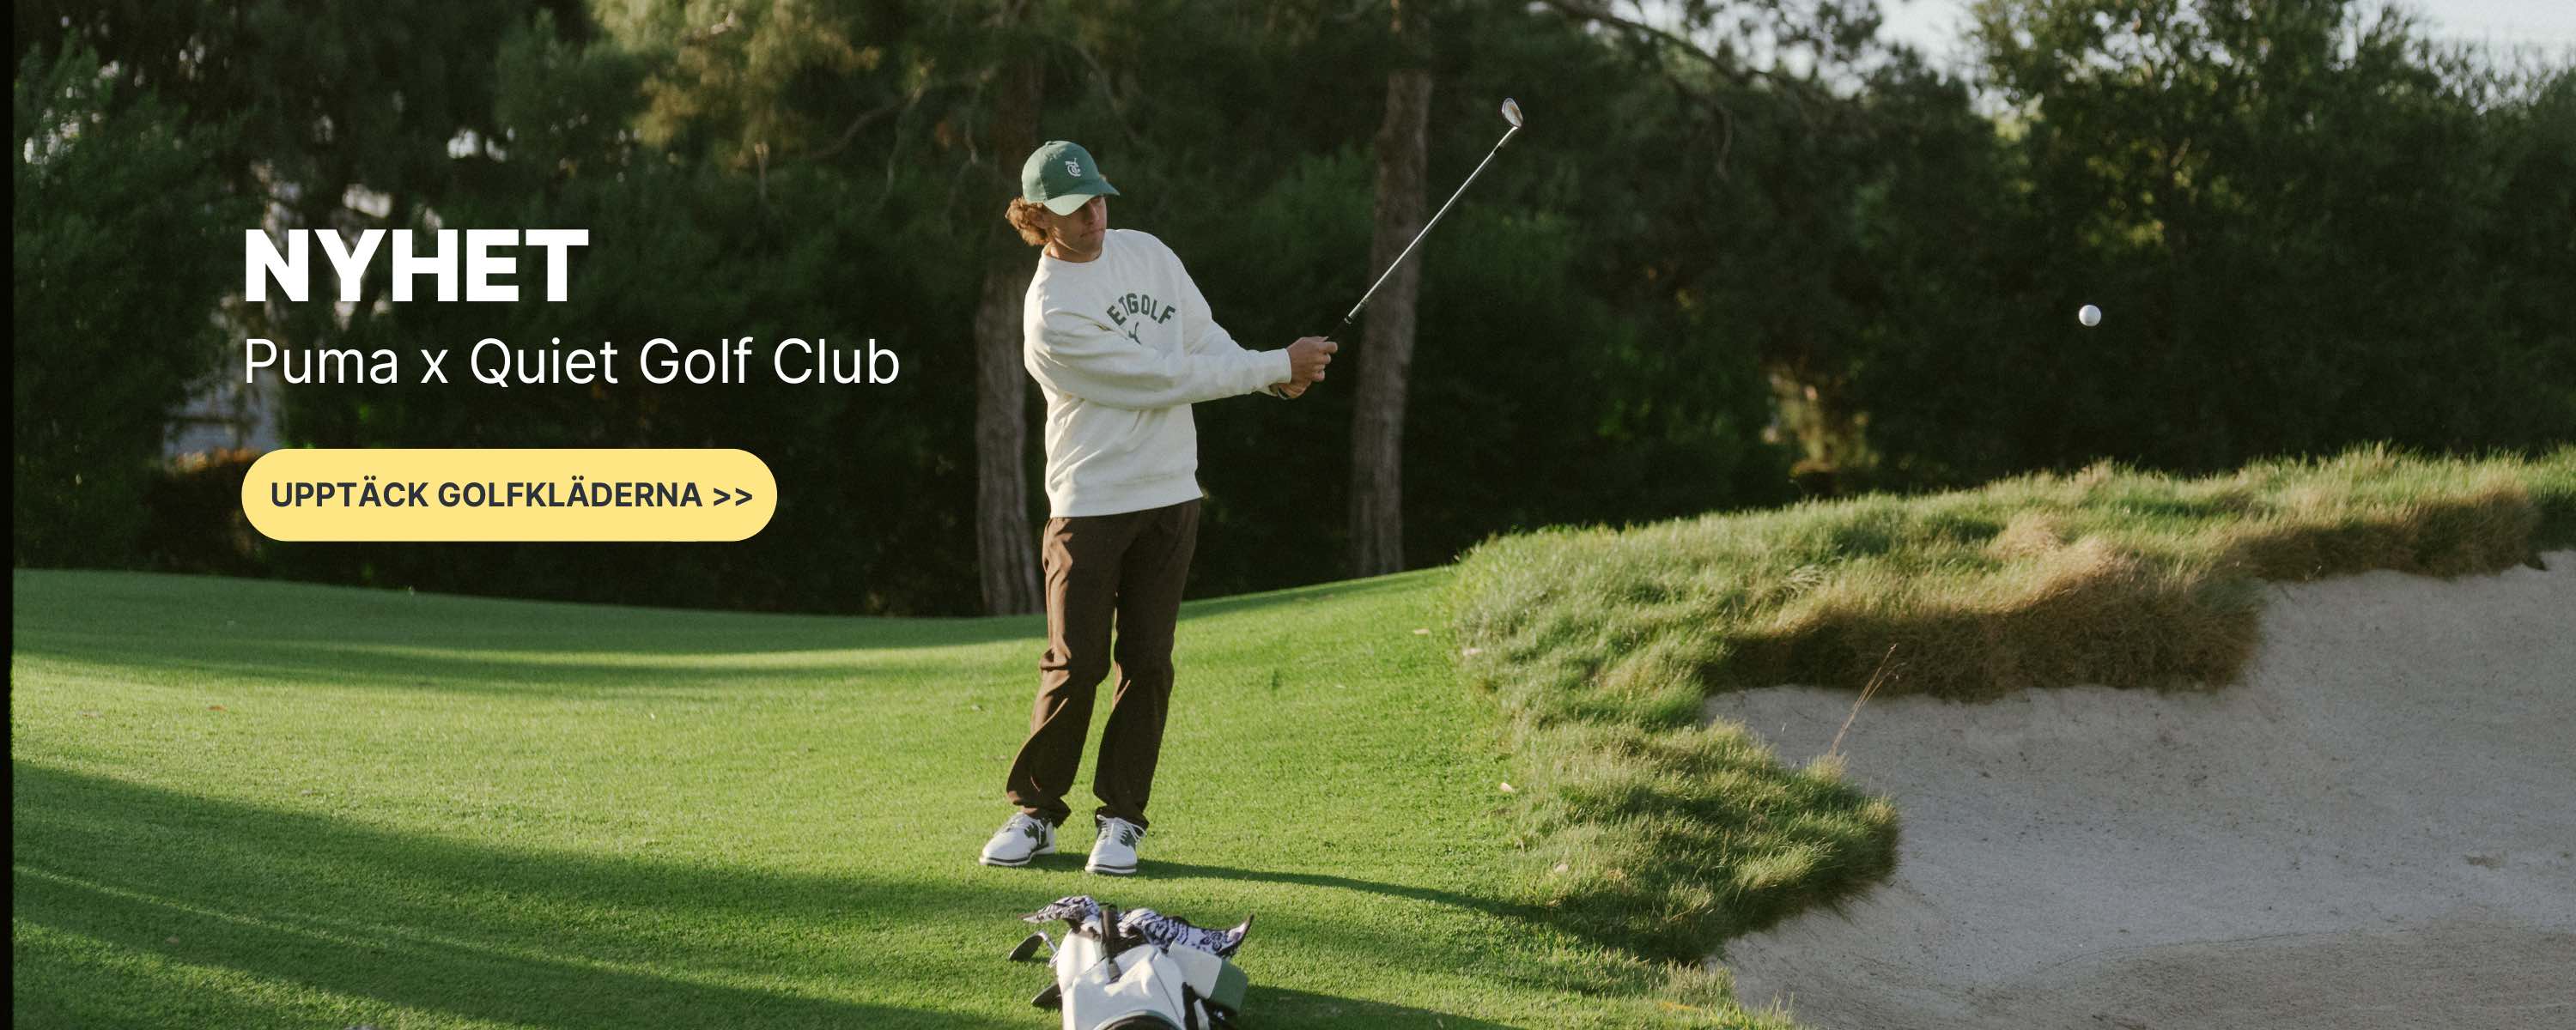 Puma x Quiet Golf Club golfkläder